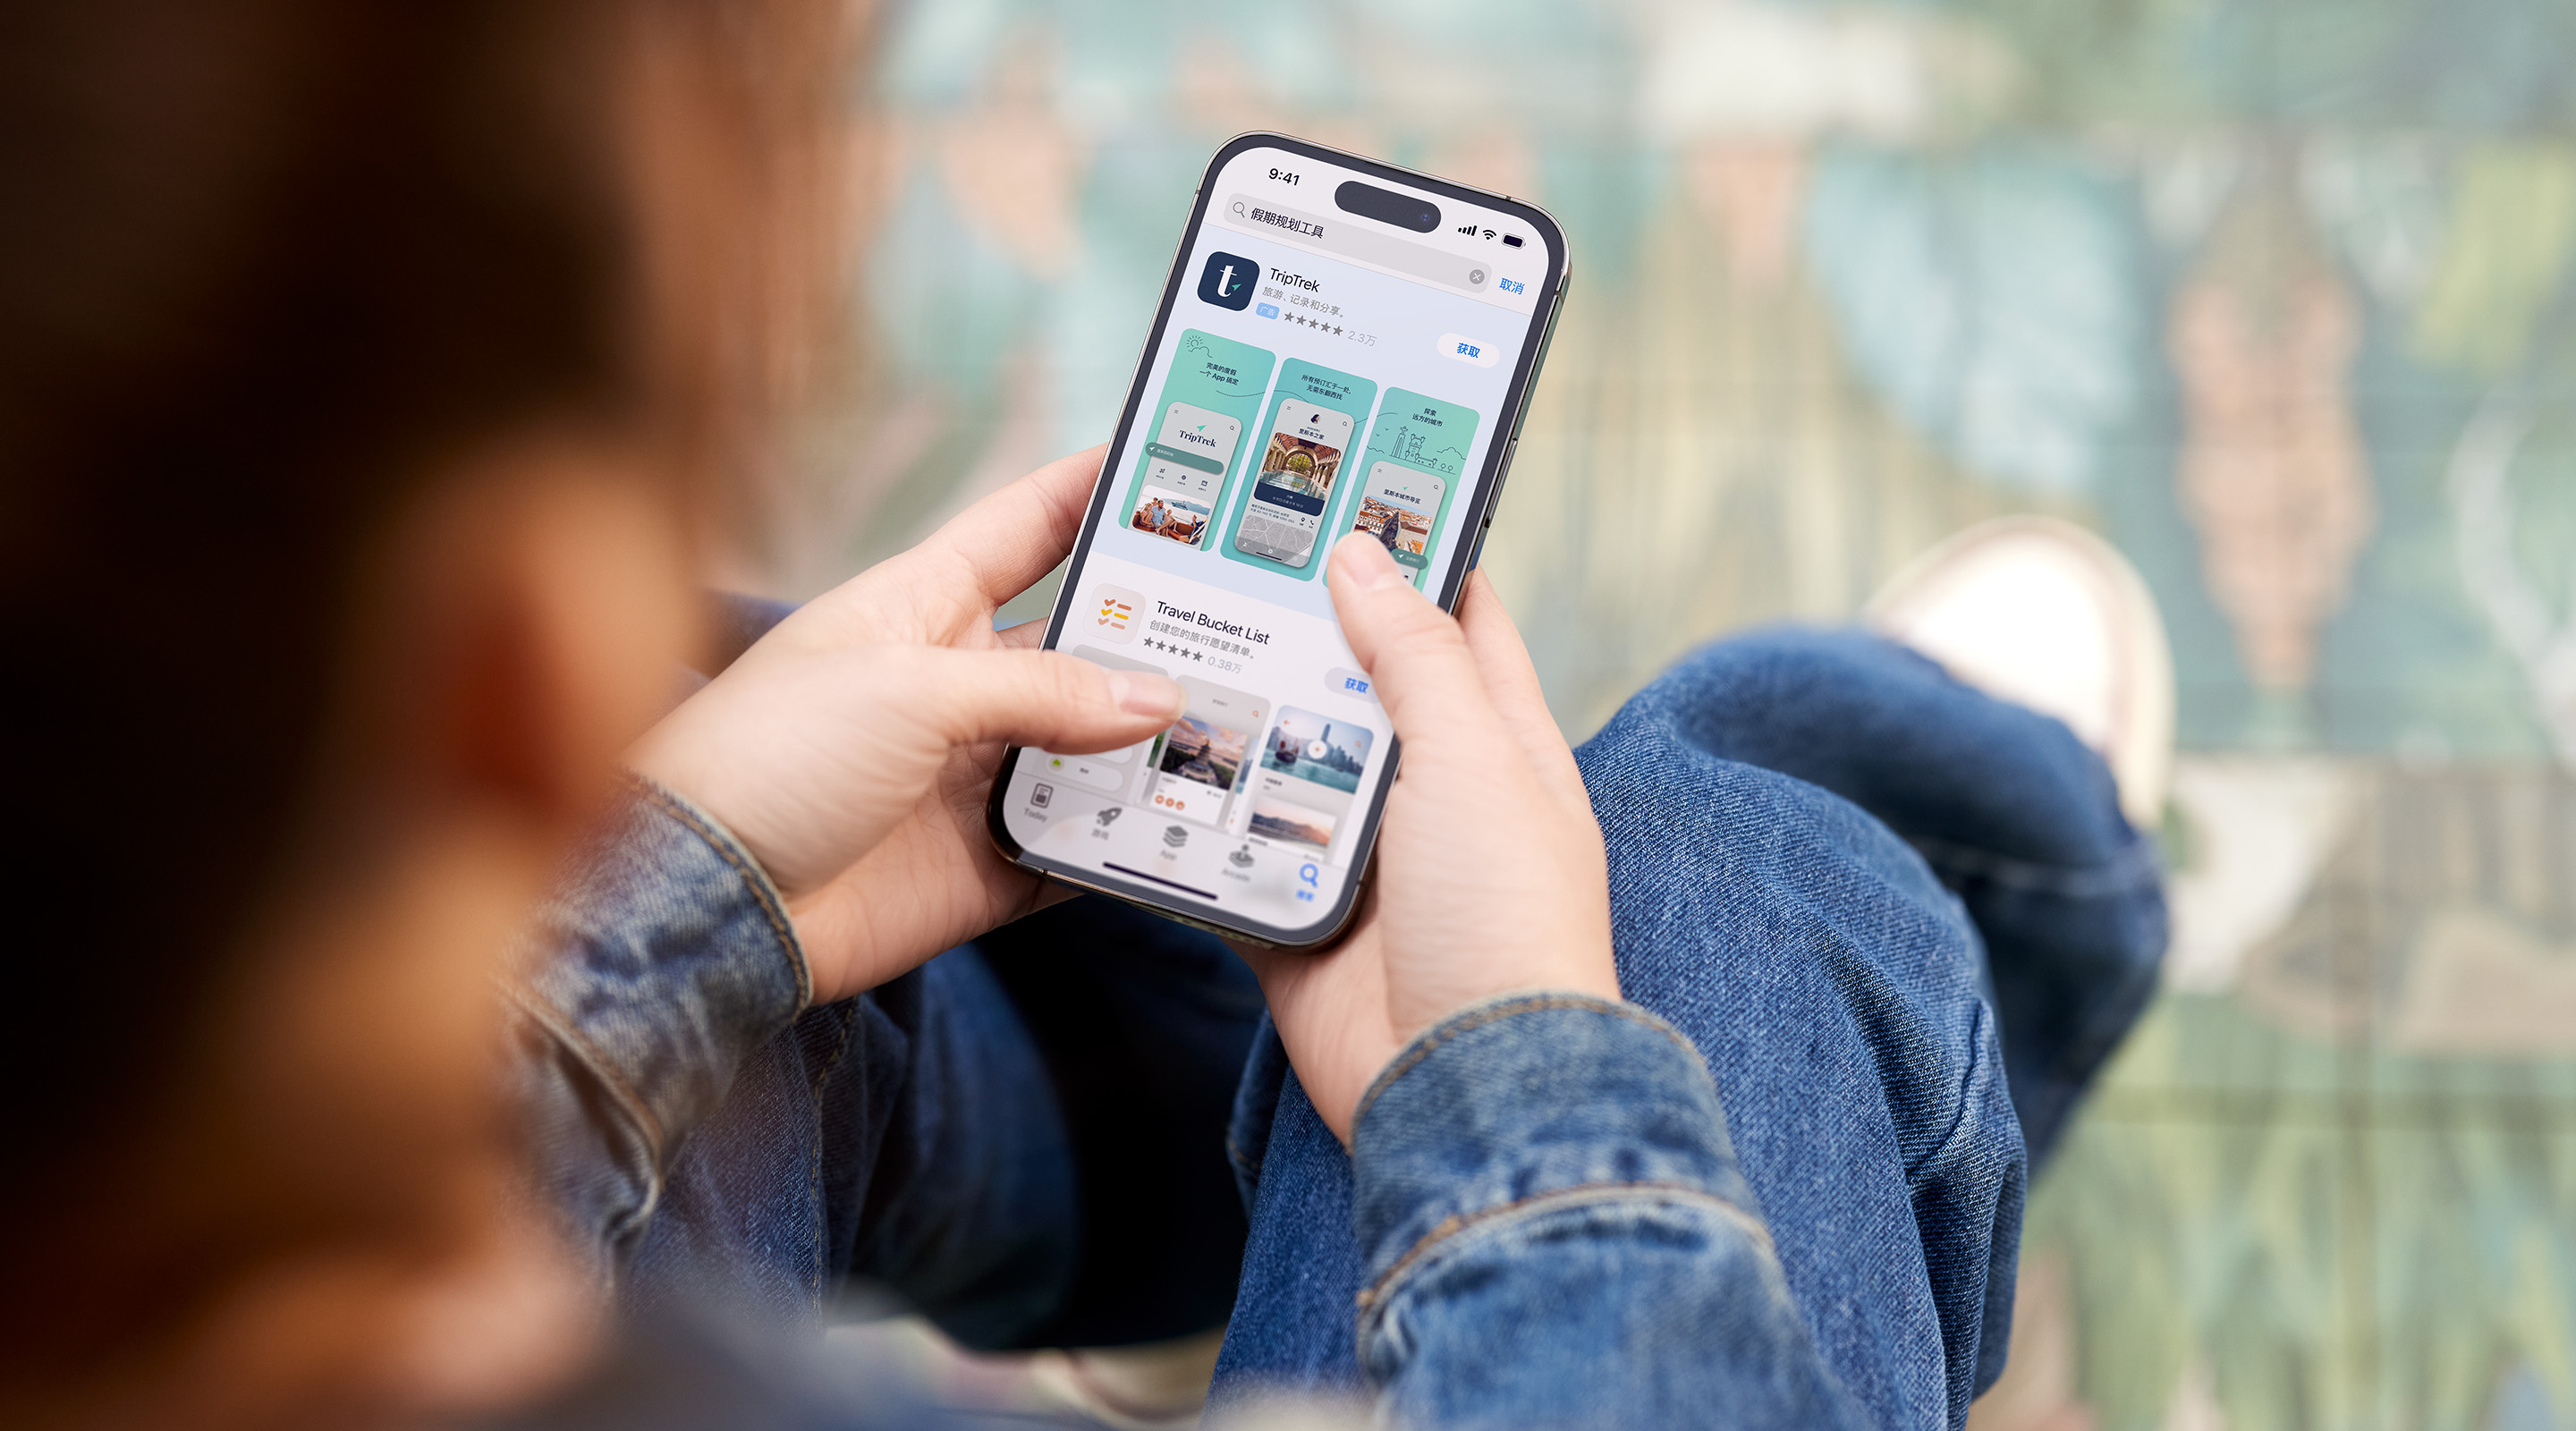 双手拿着 iPhone。已打开的 App Store 展示了示例 app“TripTrek”的搜索结果广告，搜索框中输入了“假期规划工具”一词。